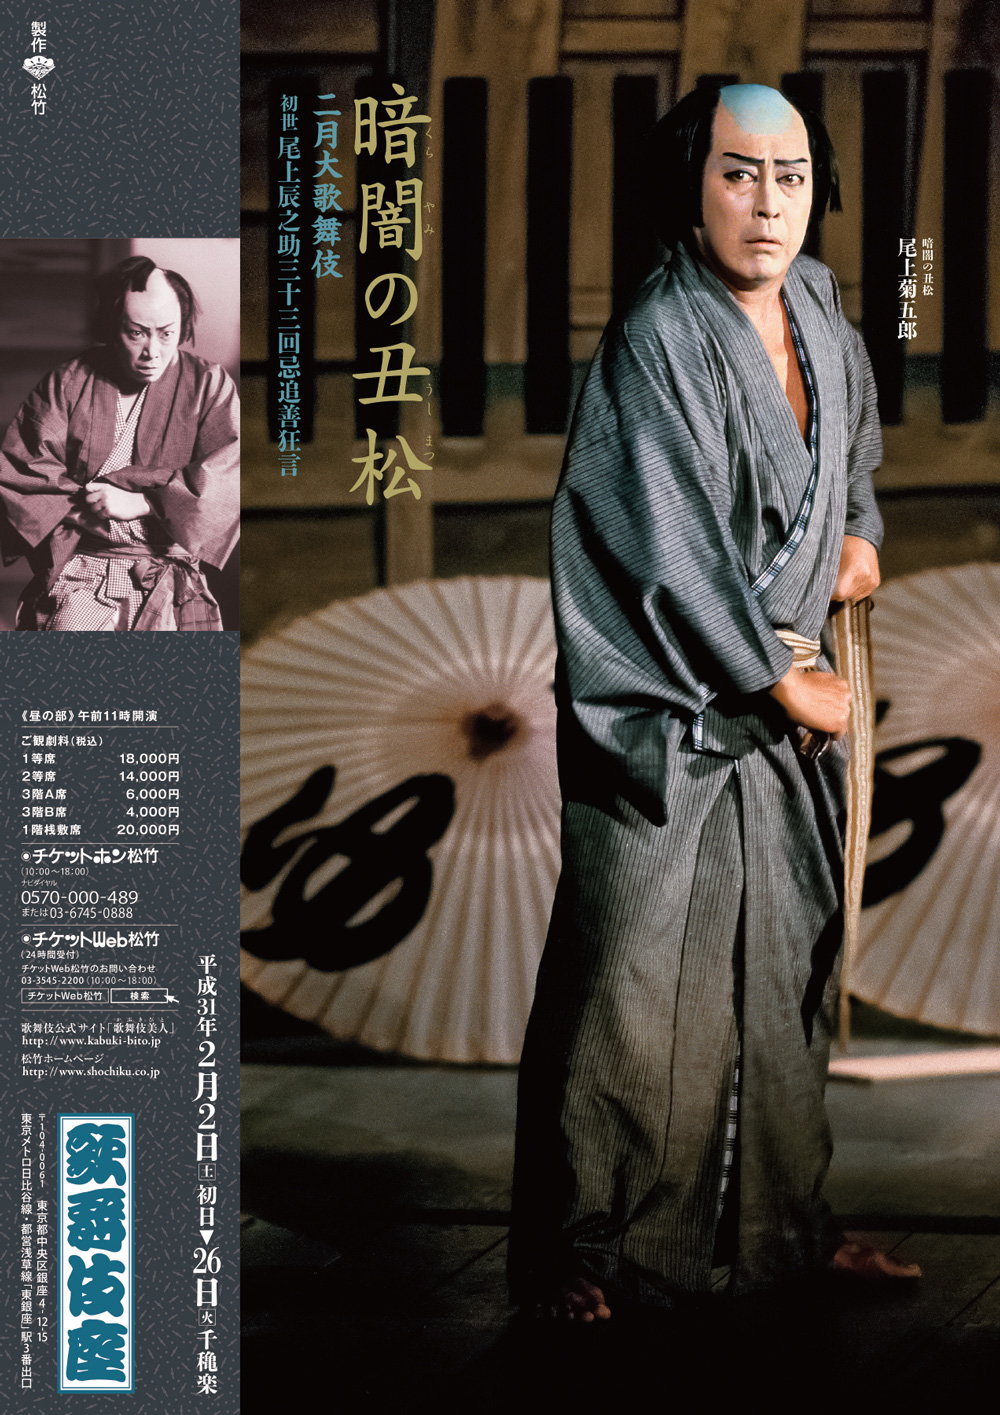 歌舞伎座「二月大歌舞伎」特別ポスターが完成